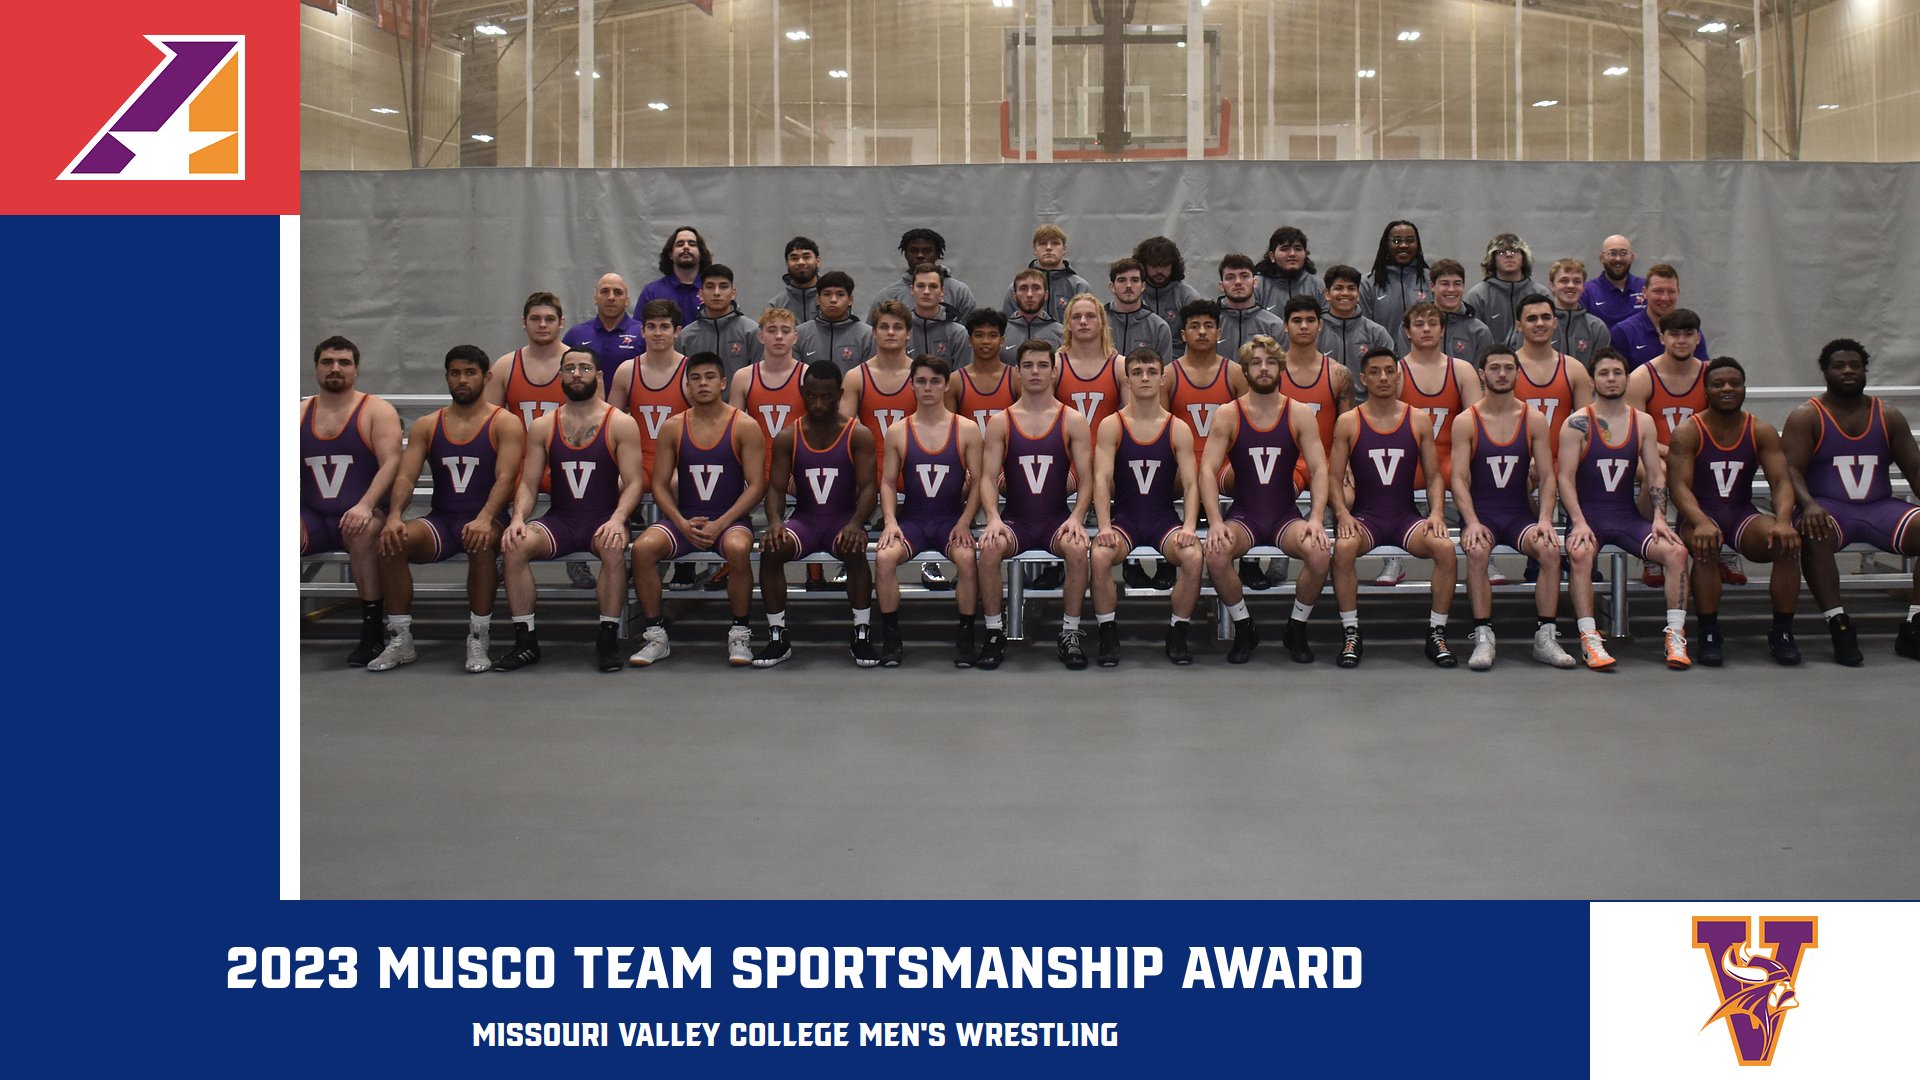 Missouri Valley Men’s Wrestling Named 2023 Musco Team Sportsmanship Award Winners for Second-Straight Season